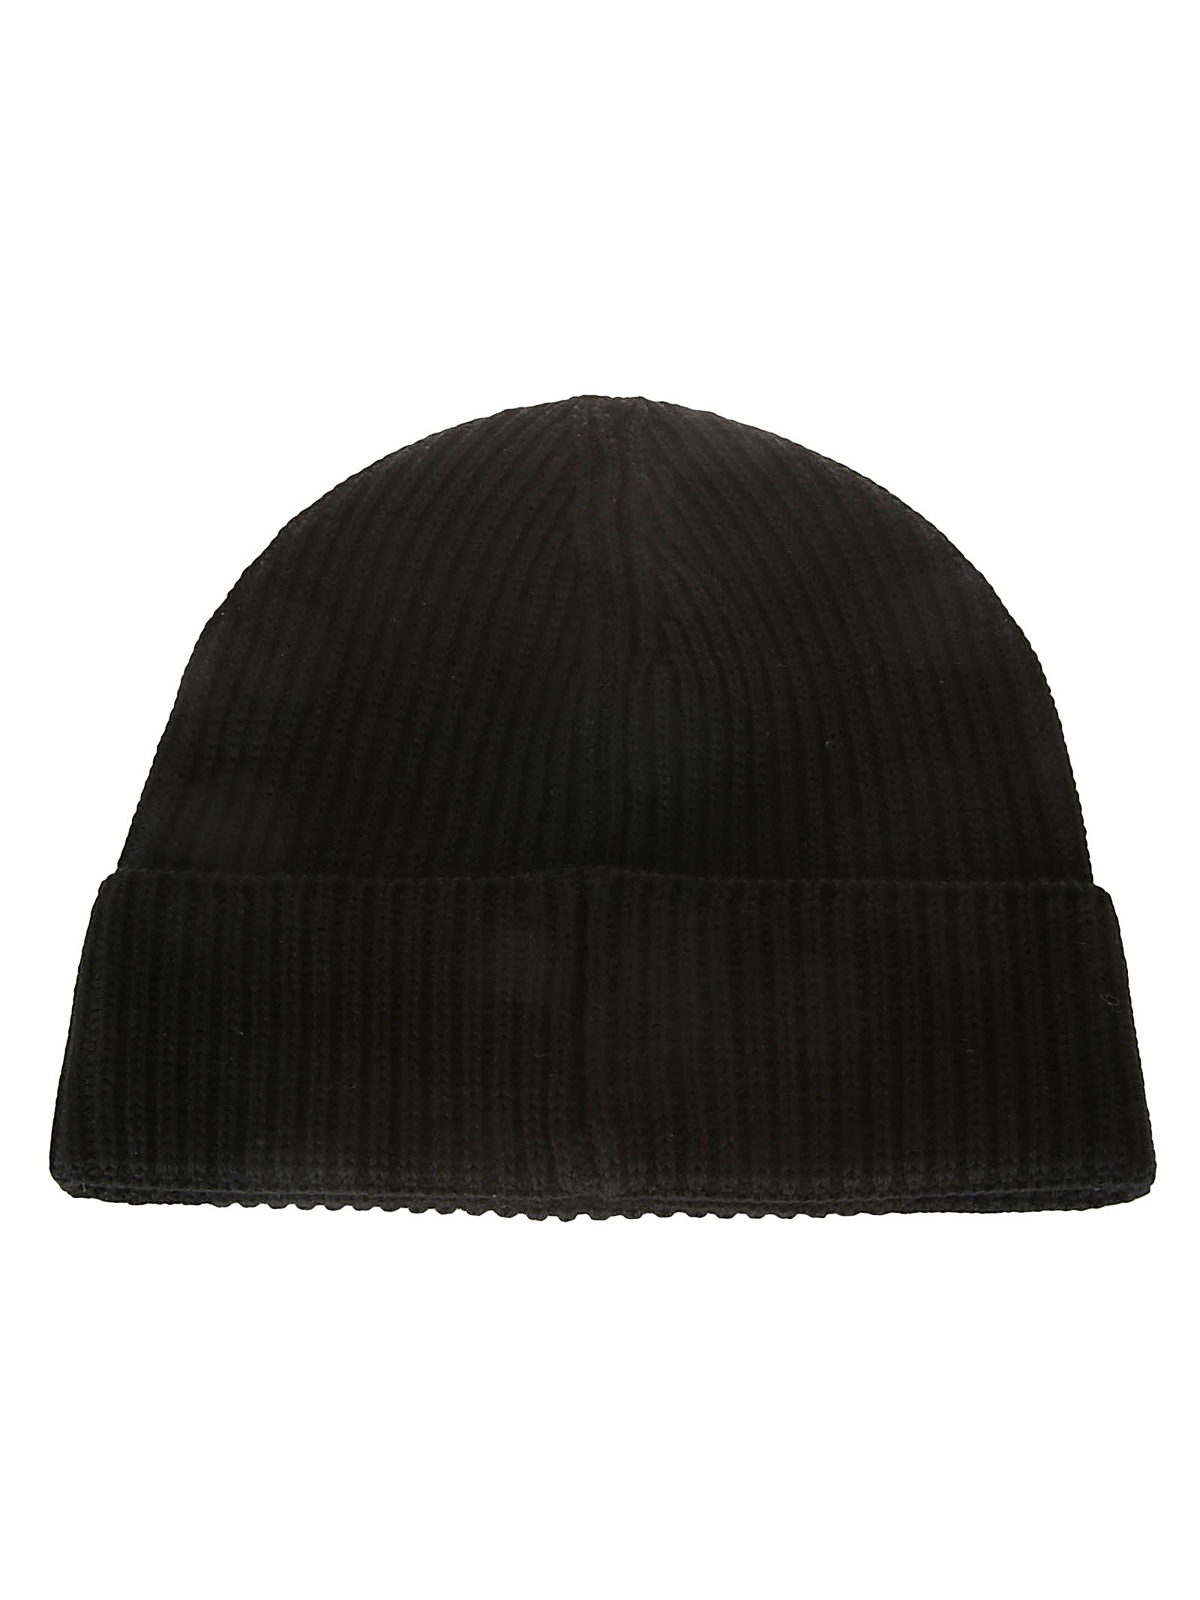 Hats & caps C.P. Company - Merino wool beanie - 15CLAC121A005509A999